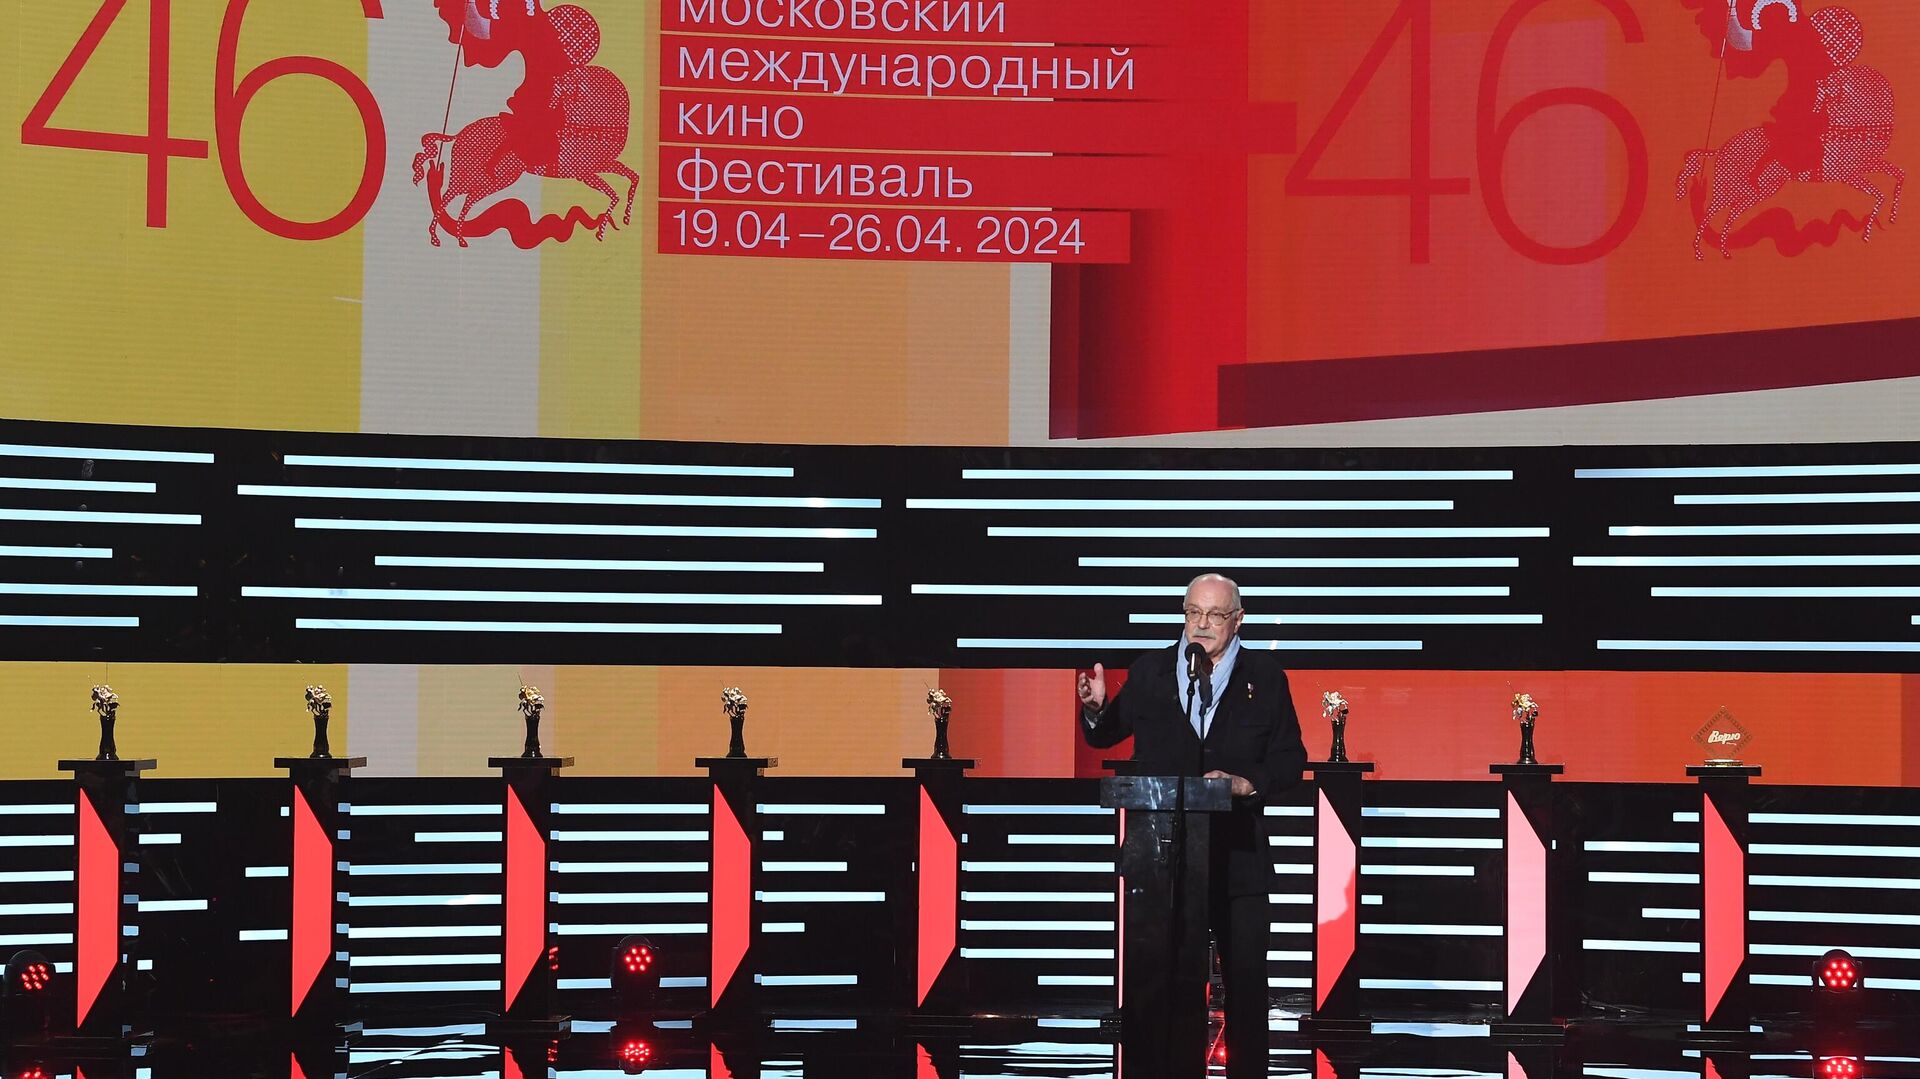 Президент ММКФ Никита Михалков на церемонии открытия 46-го Московского международного кинофестиваля в театре Россия.0